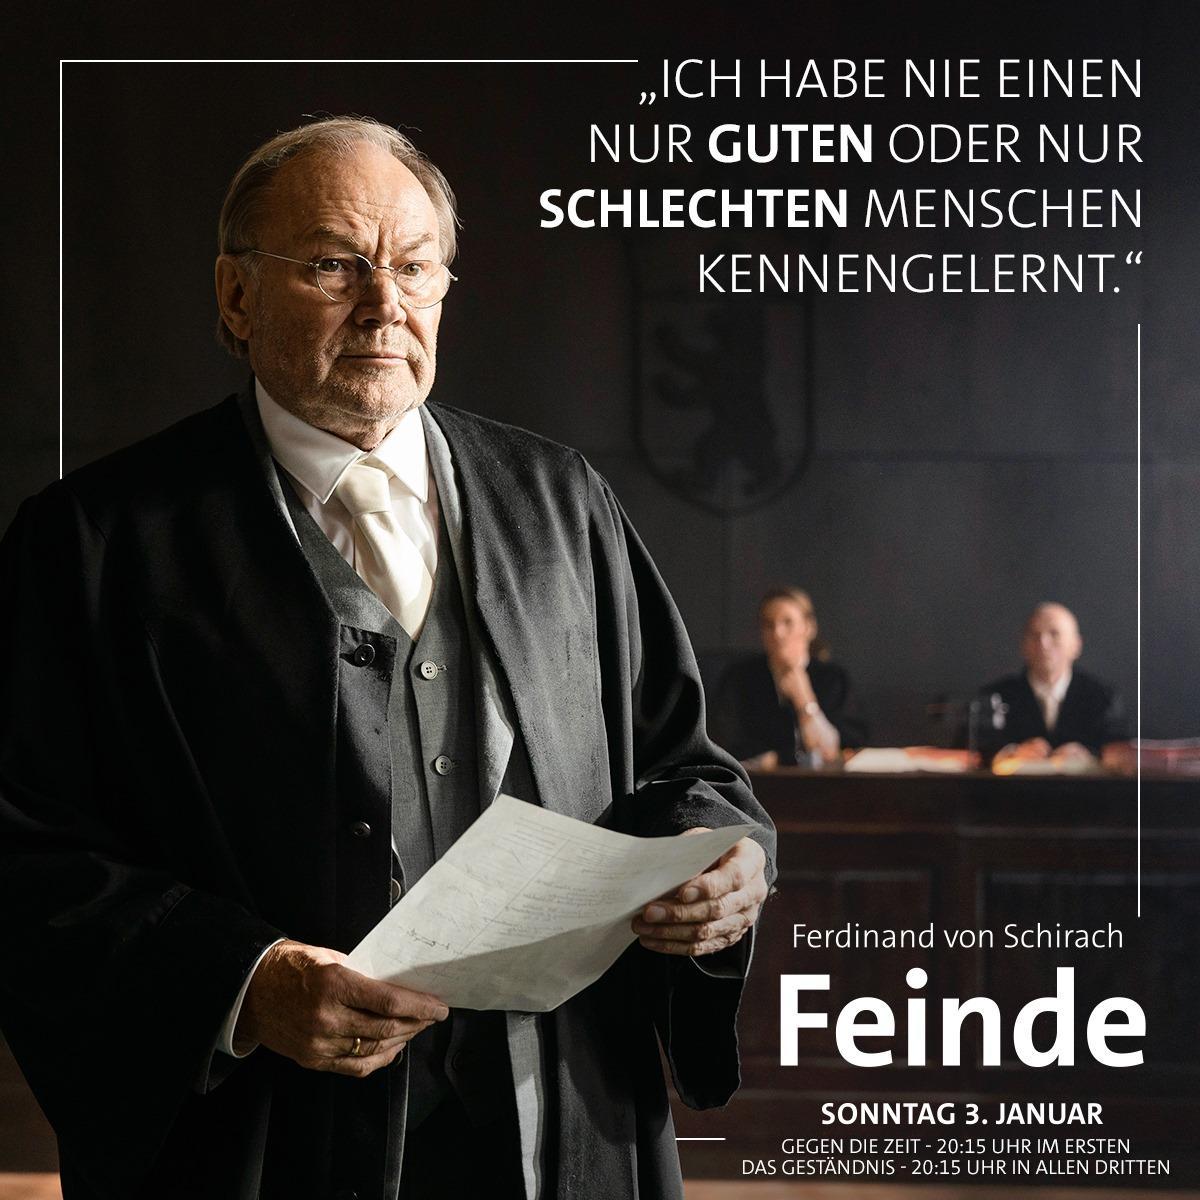 Ferdinand von Schirach: Feinde - Gegen die Zeit (TV) - Promo